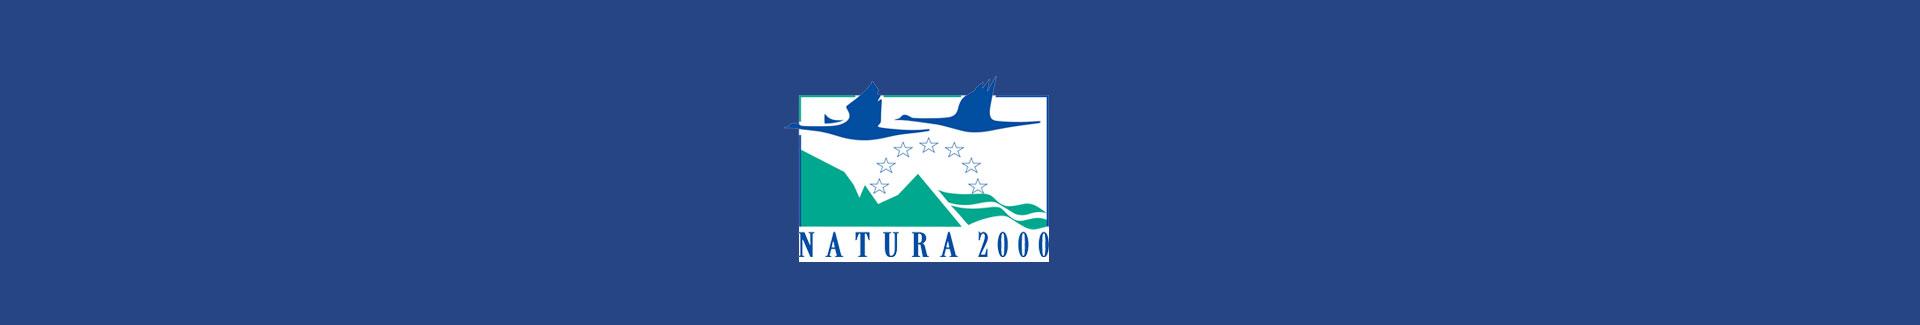 Natura 2000 - banner